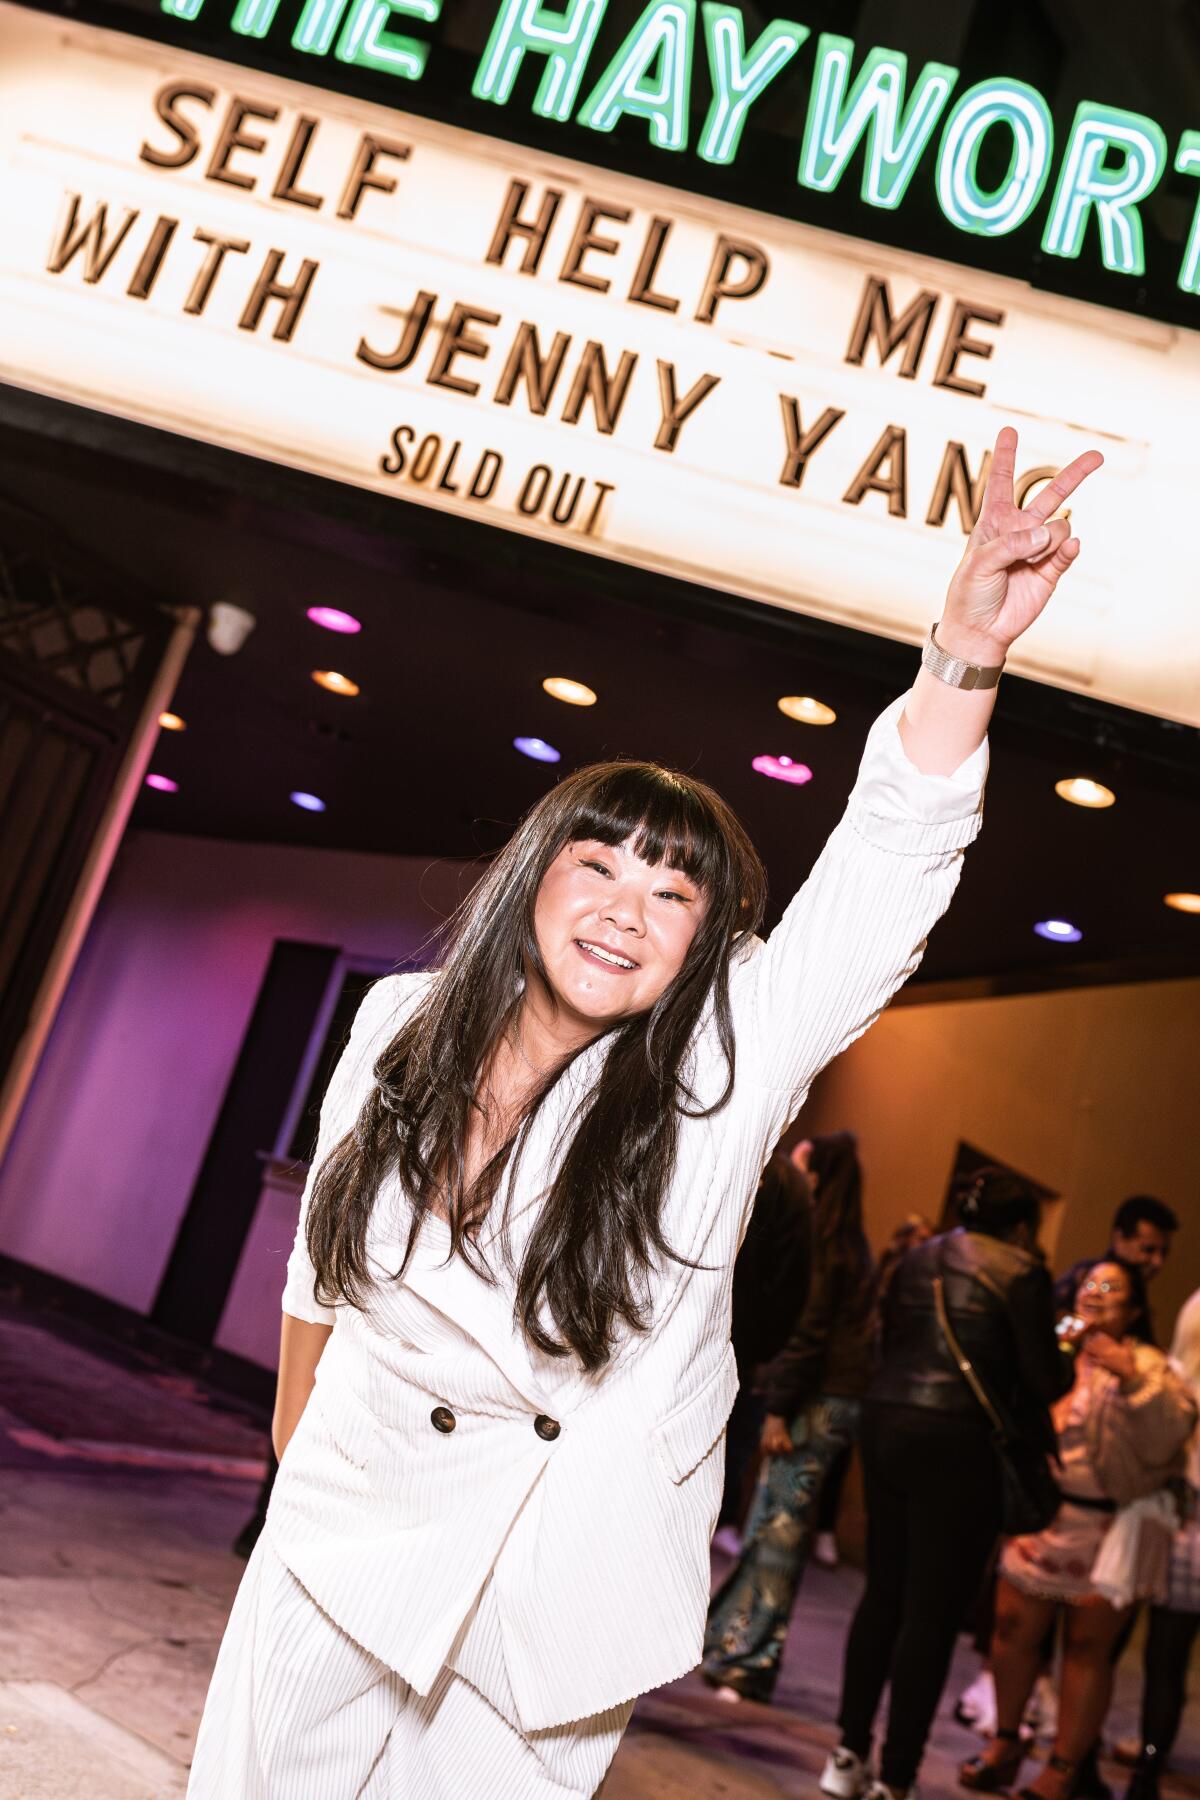 Jenny Yang